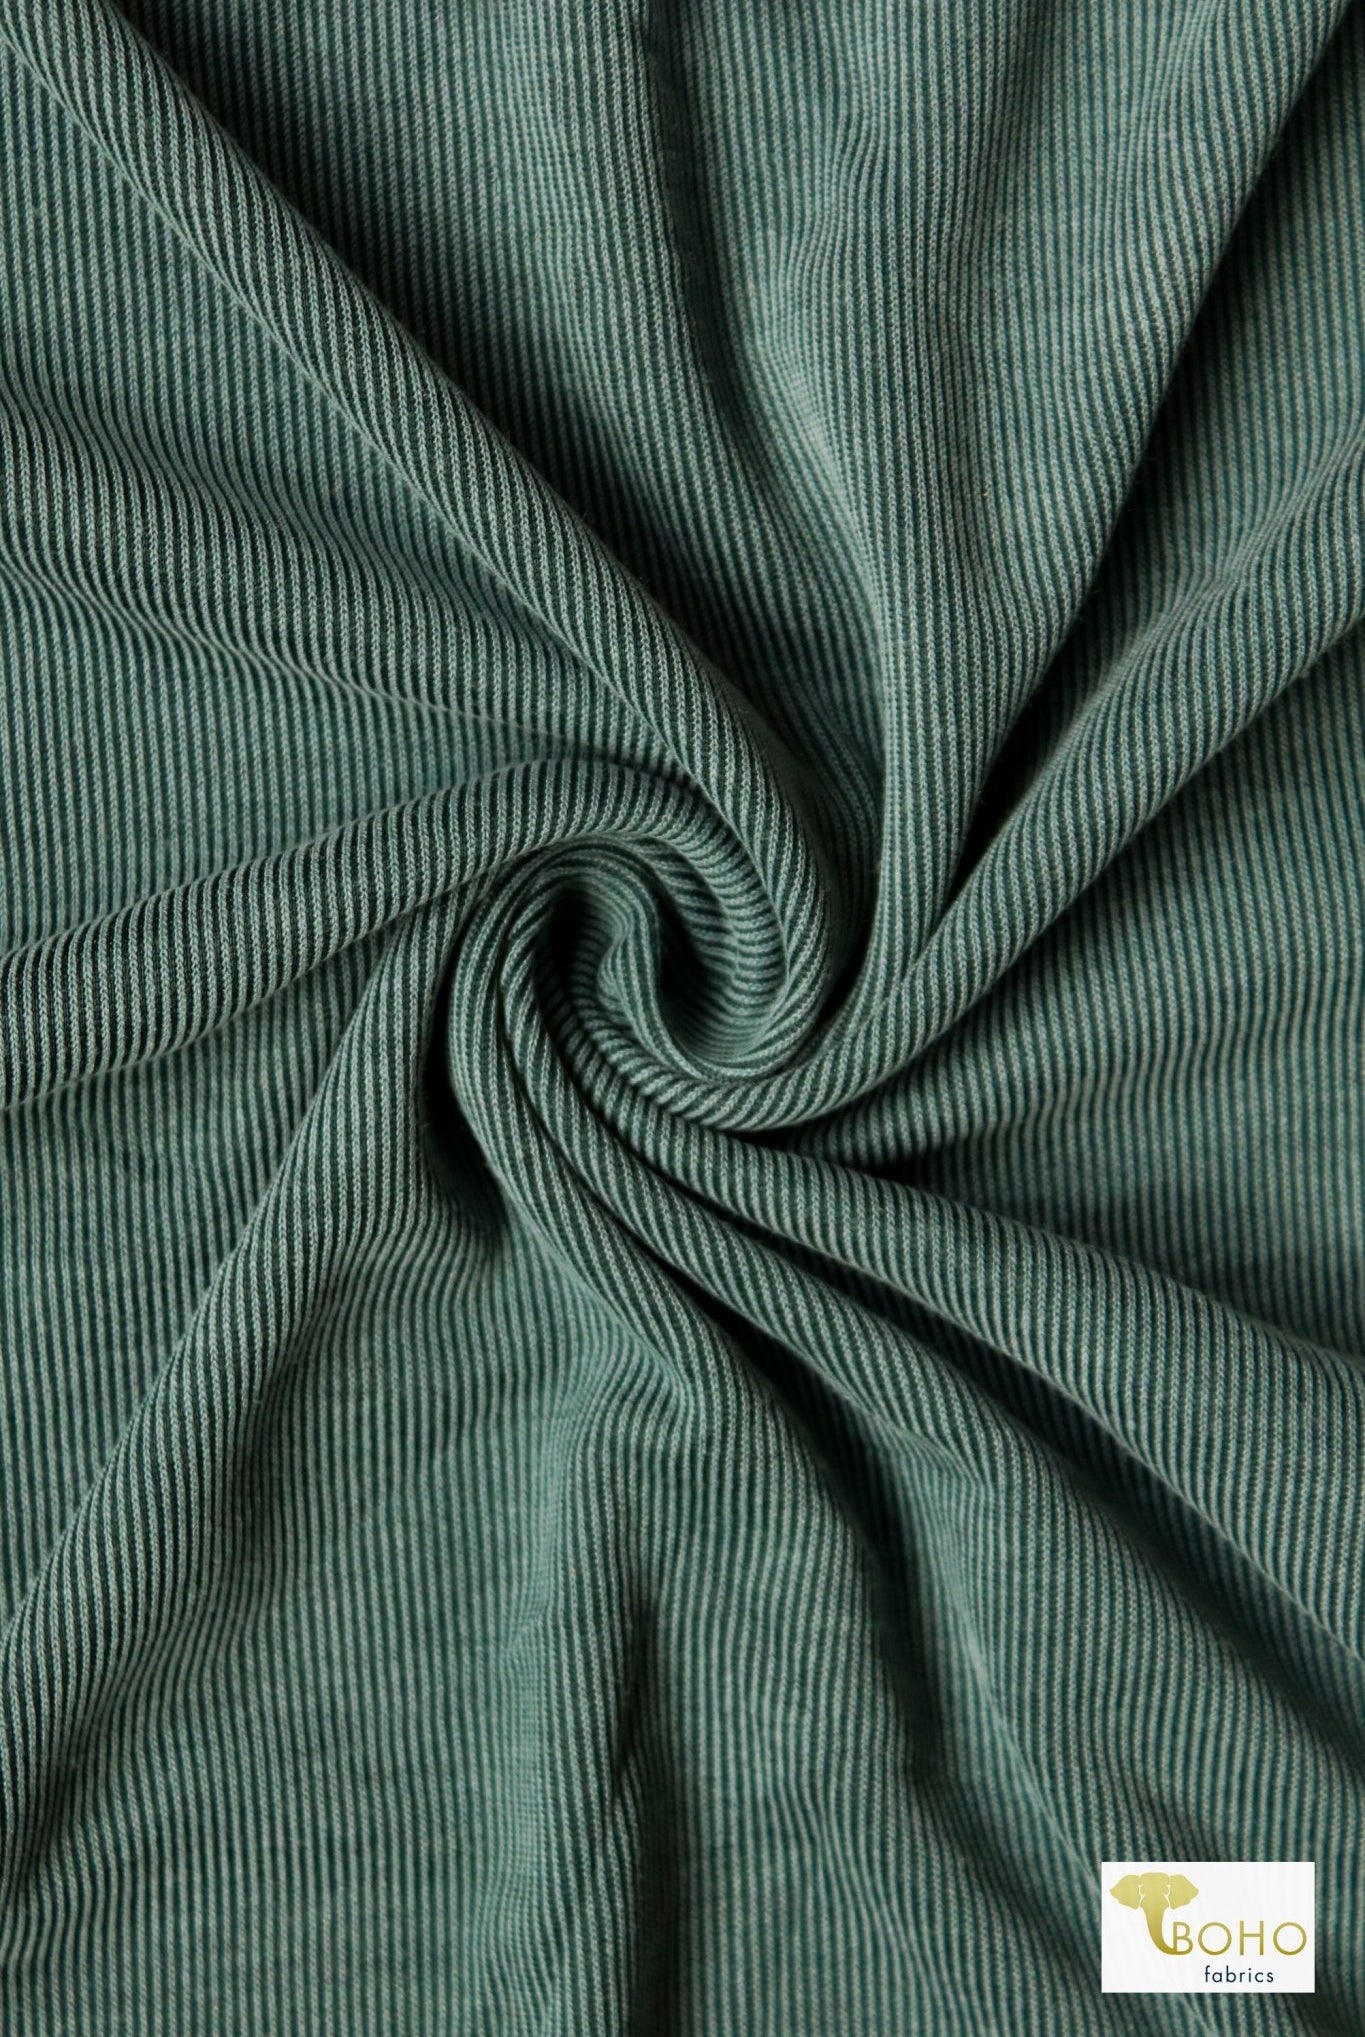 Blue Sage, Cupro Rib Knit Fabric - Boho Fabrics - Cupro, Knit Fabric